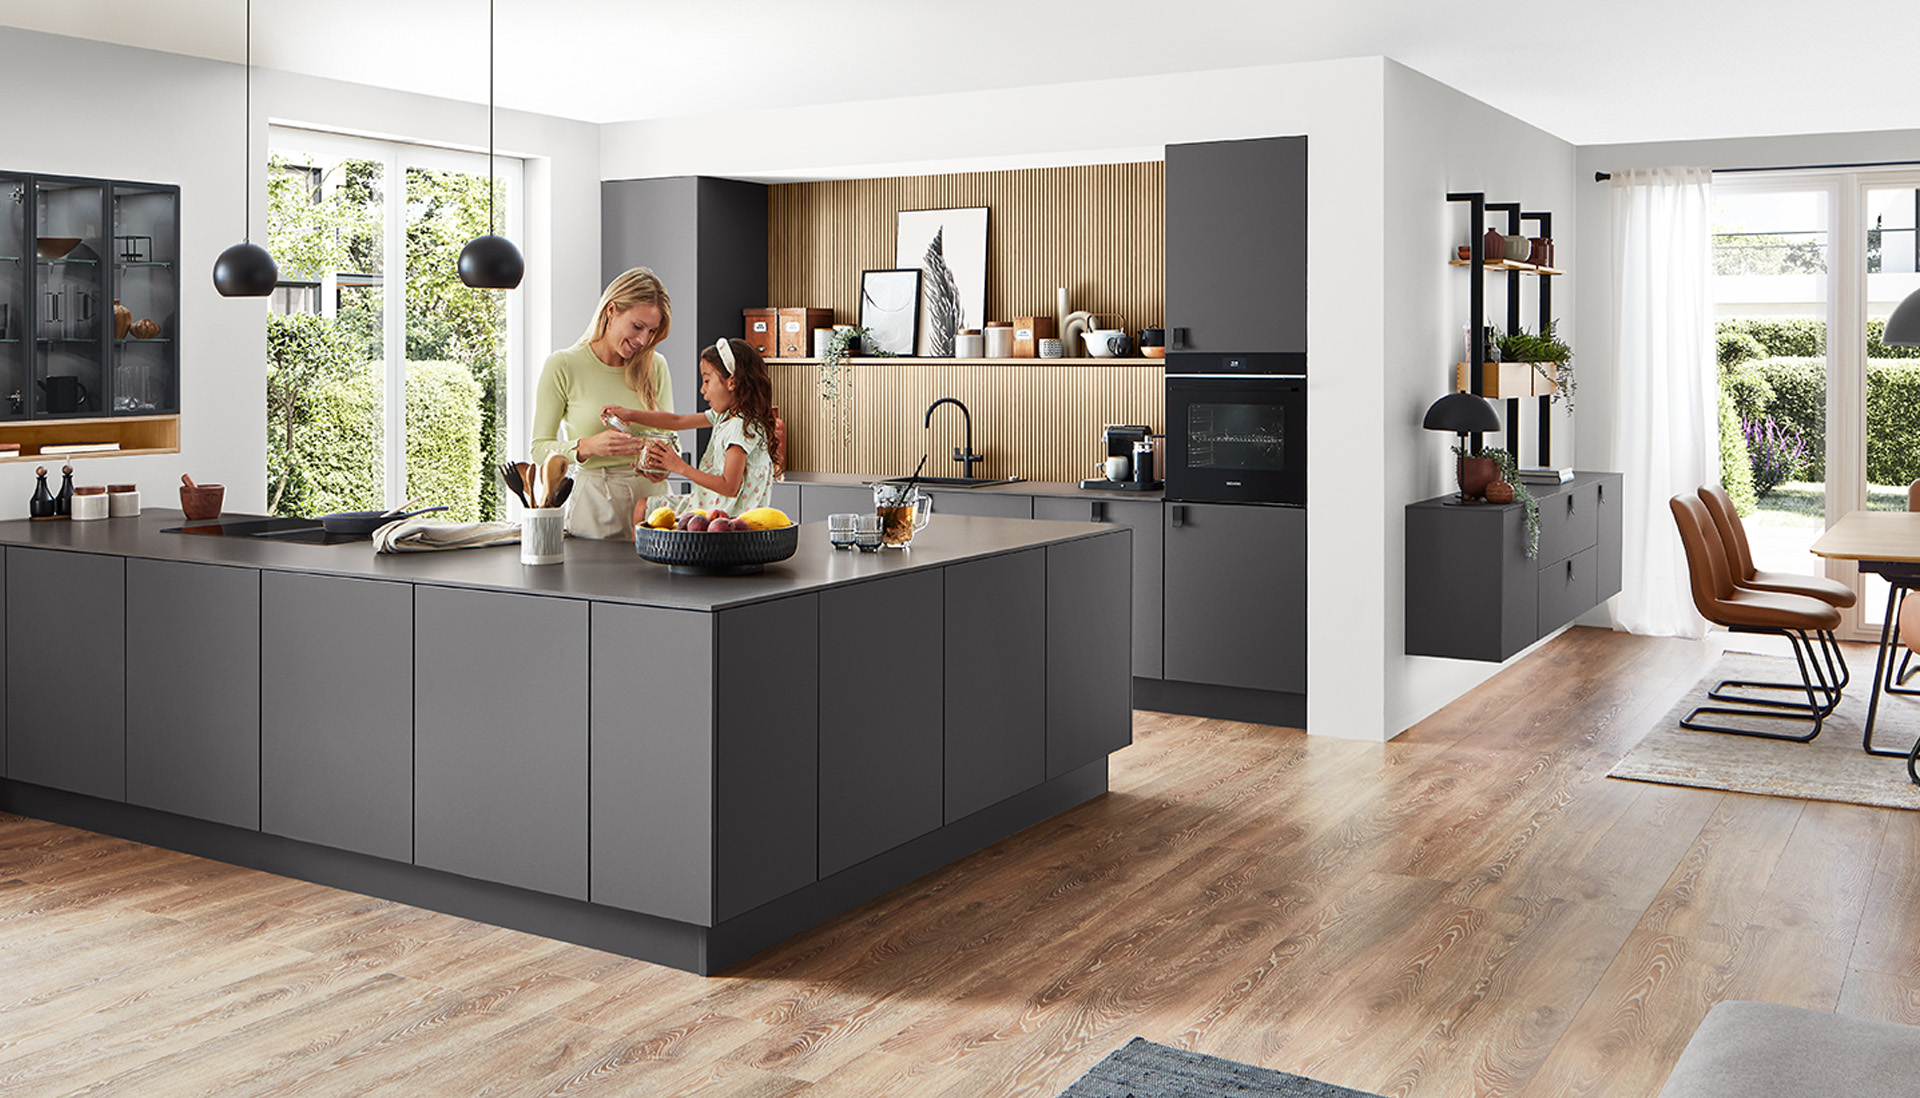 Moderne geräumige Küche mit stilvollem Design, einem zentralen Küchenblock, integrierten Geräten und einer Familie, die gemeinsam eine Kochaktivität genießt.